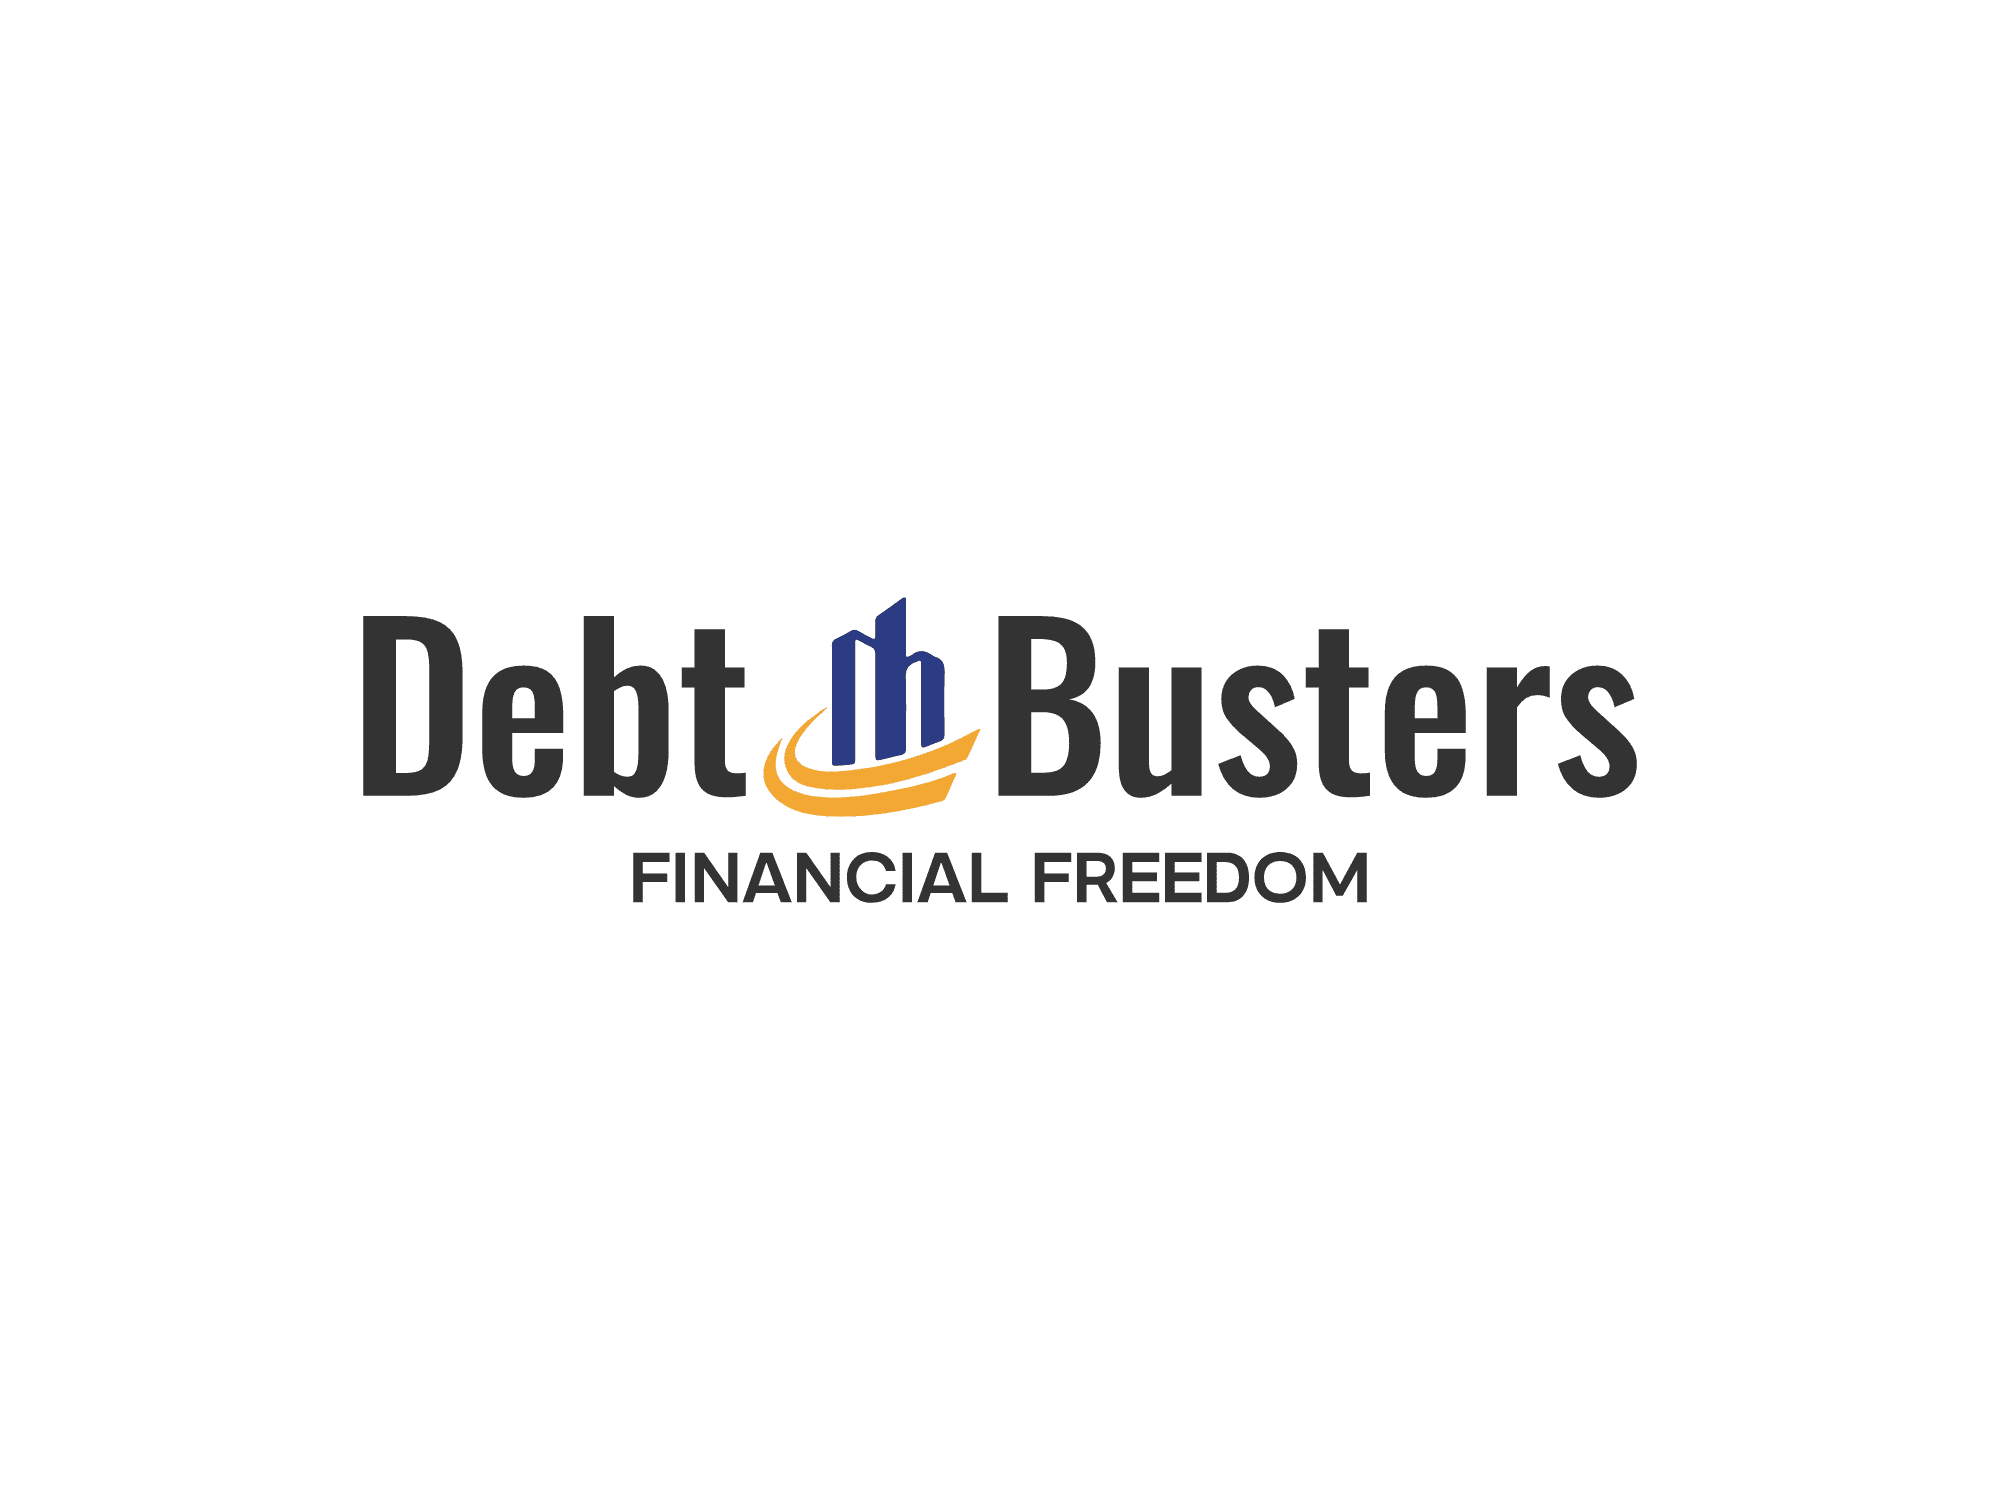 Debt Busters